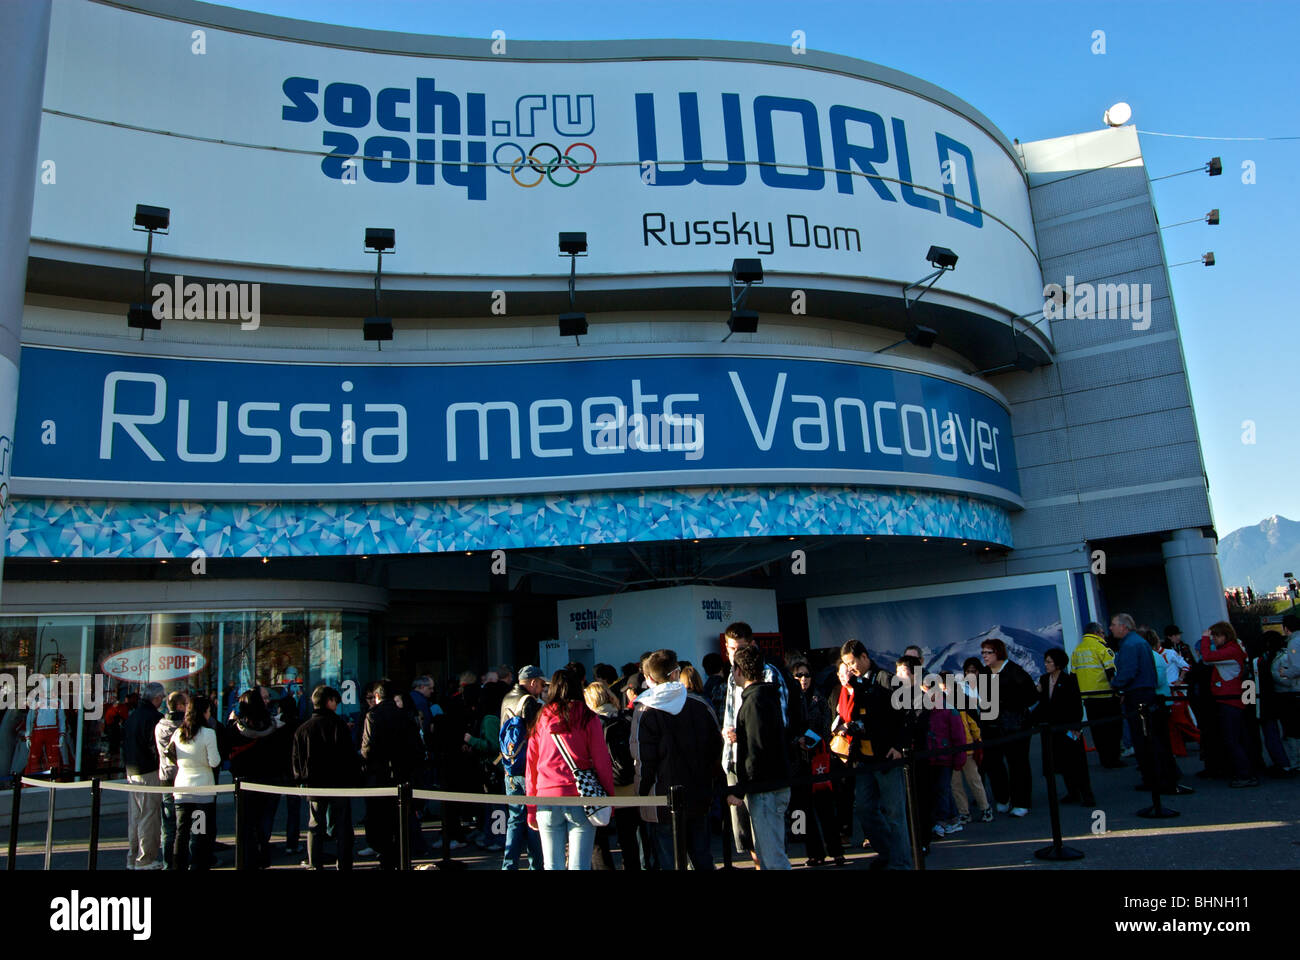 Grande segno sulla folla a Casa Russia promozione russo sito olimpico a Sochi 2014 durante invernali di Vancouver 2010 Foto Stock